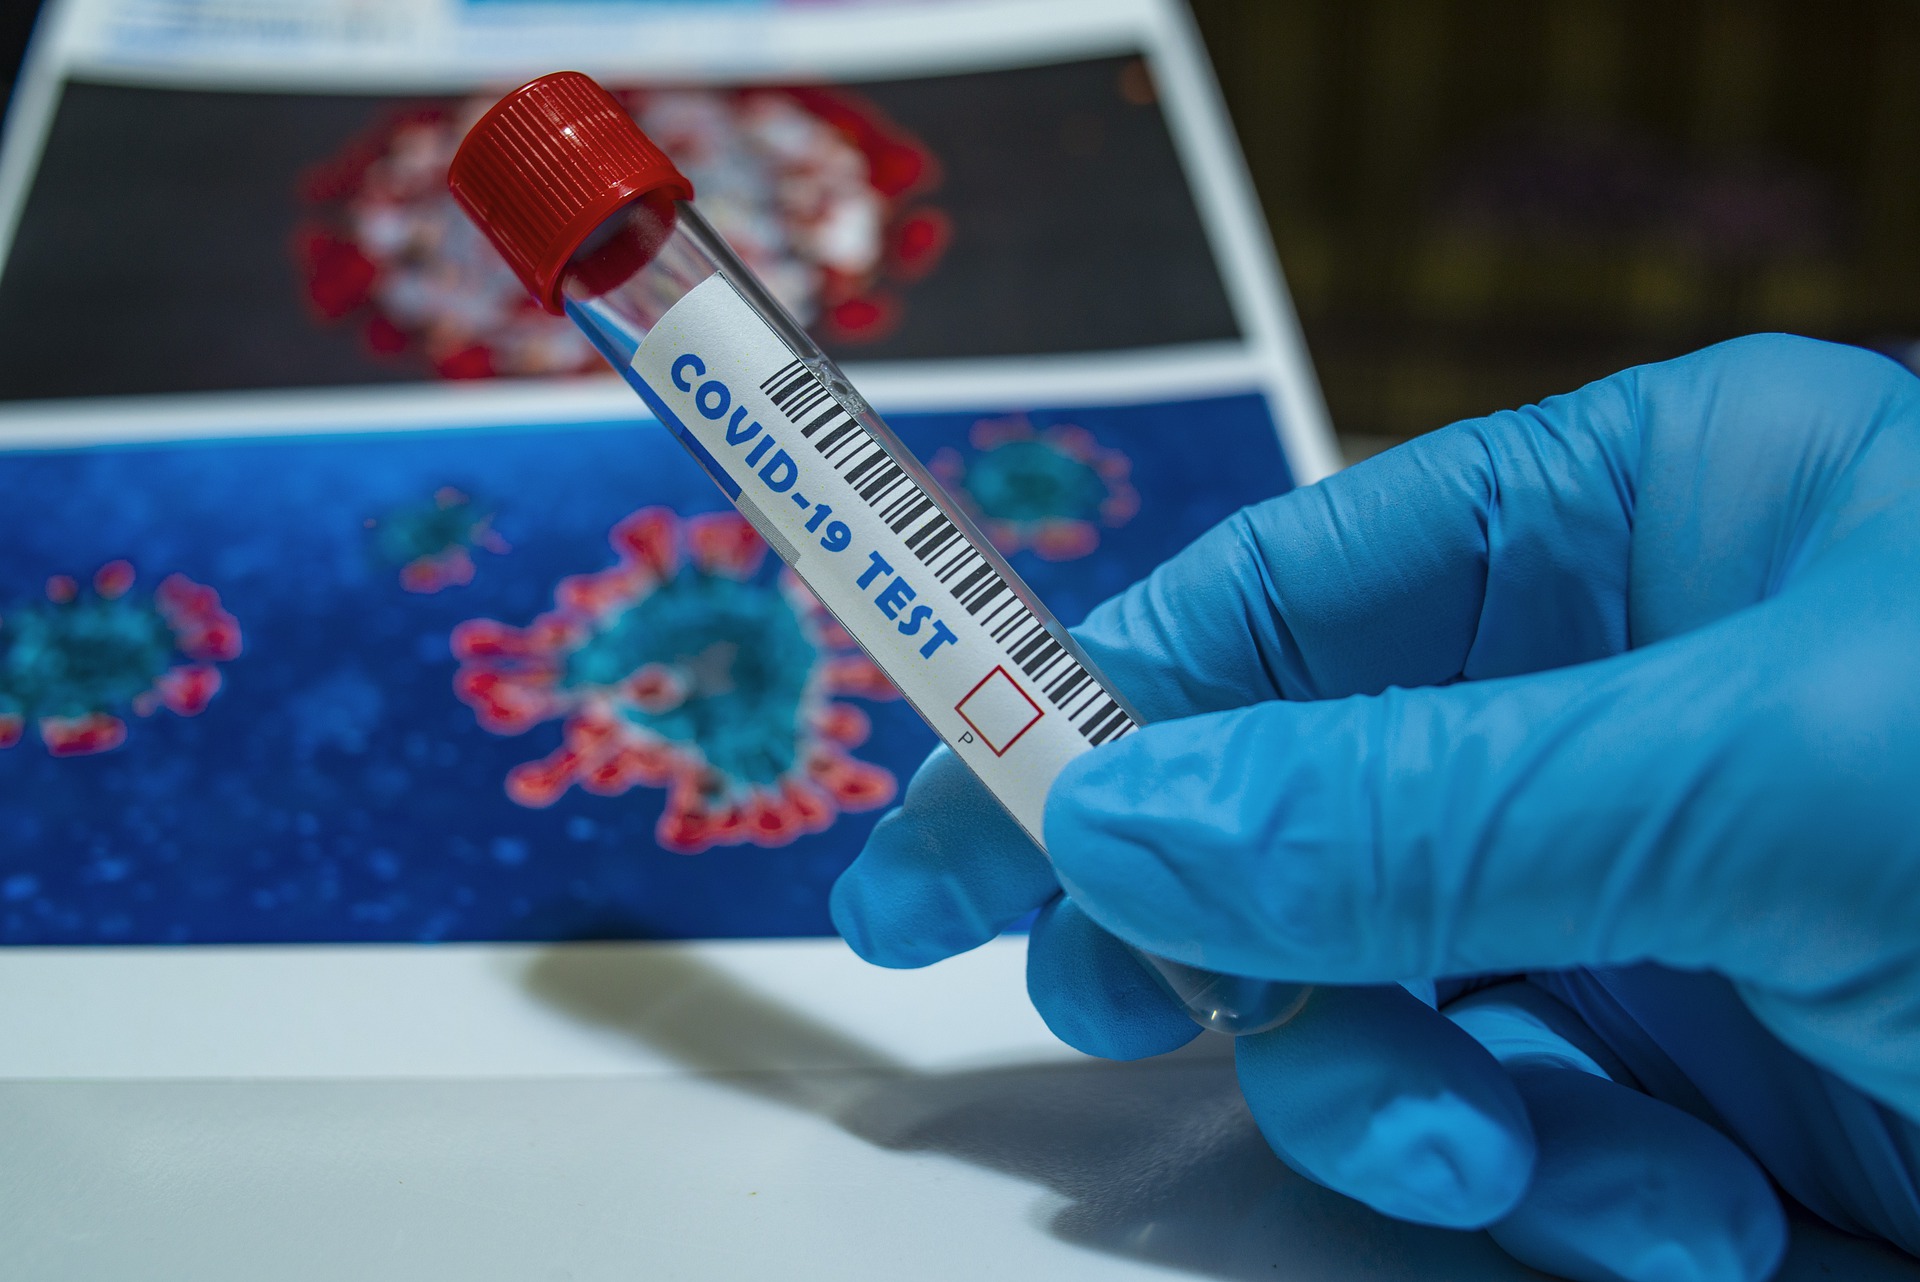 4019 тестов на коронавирус провели в Смоленской области за сутки